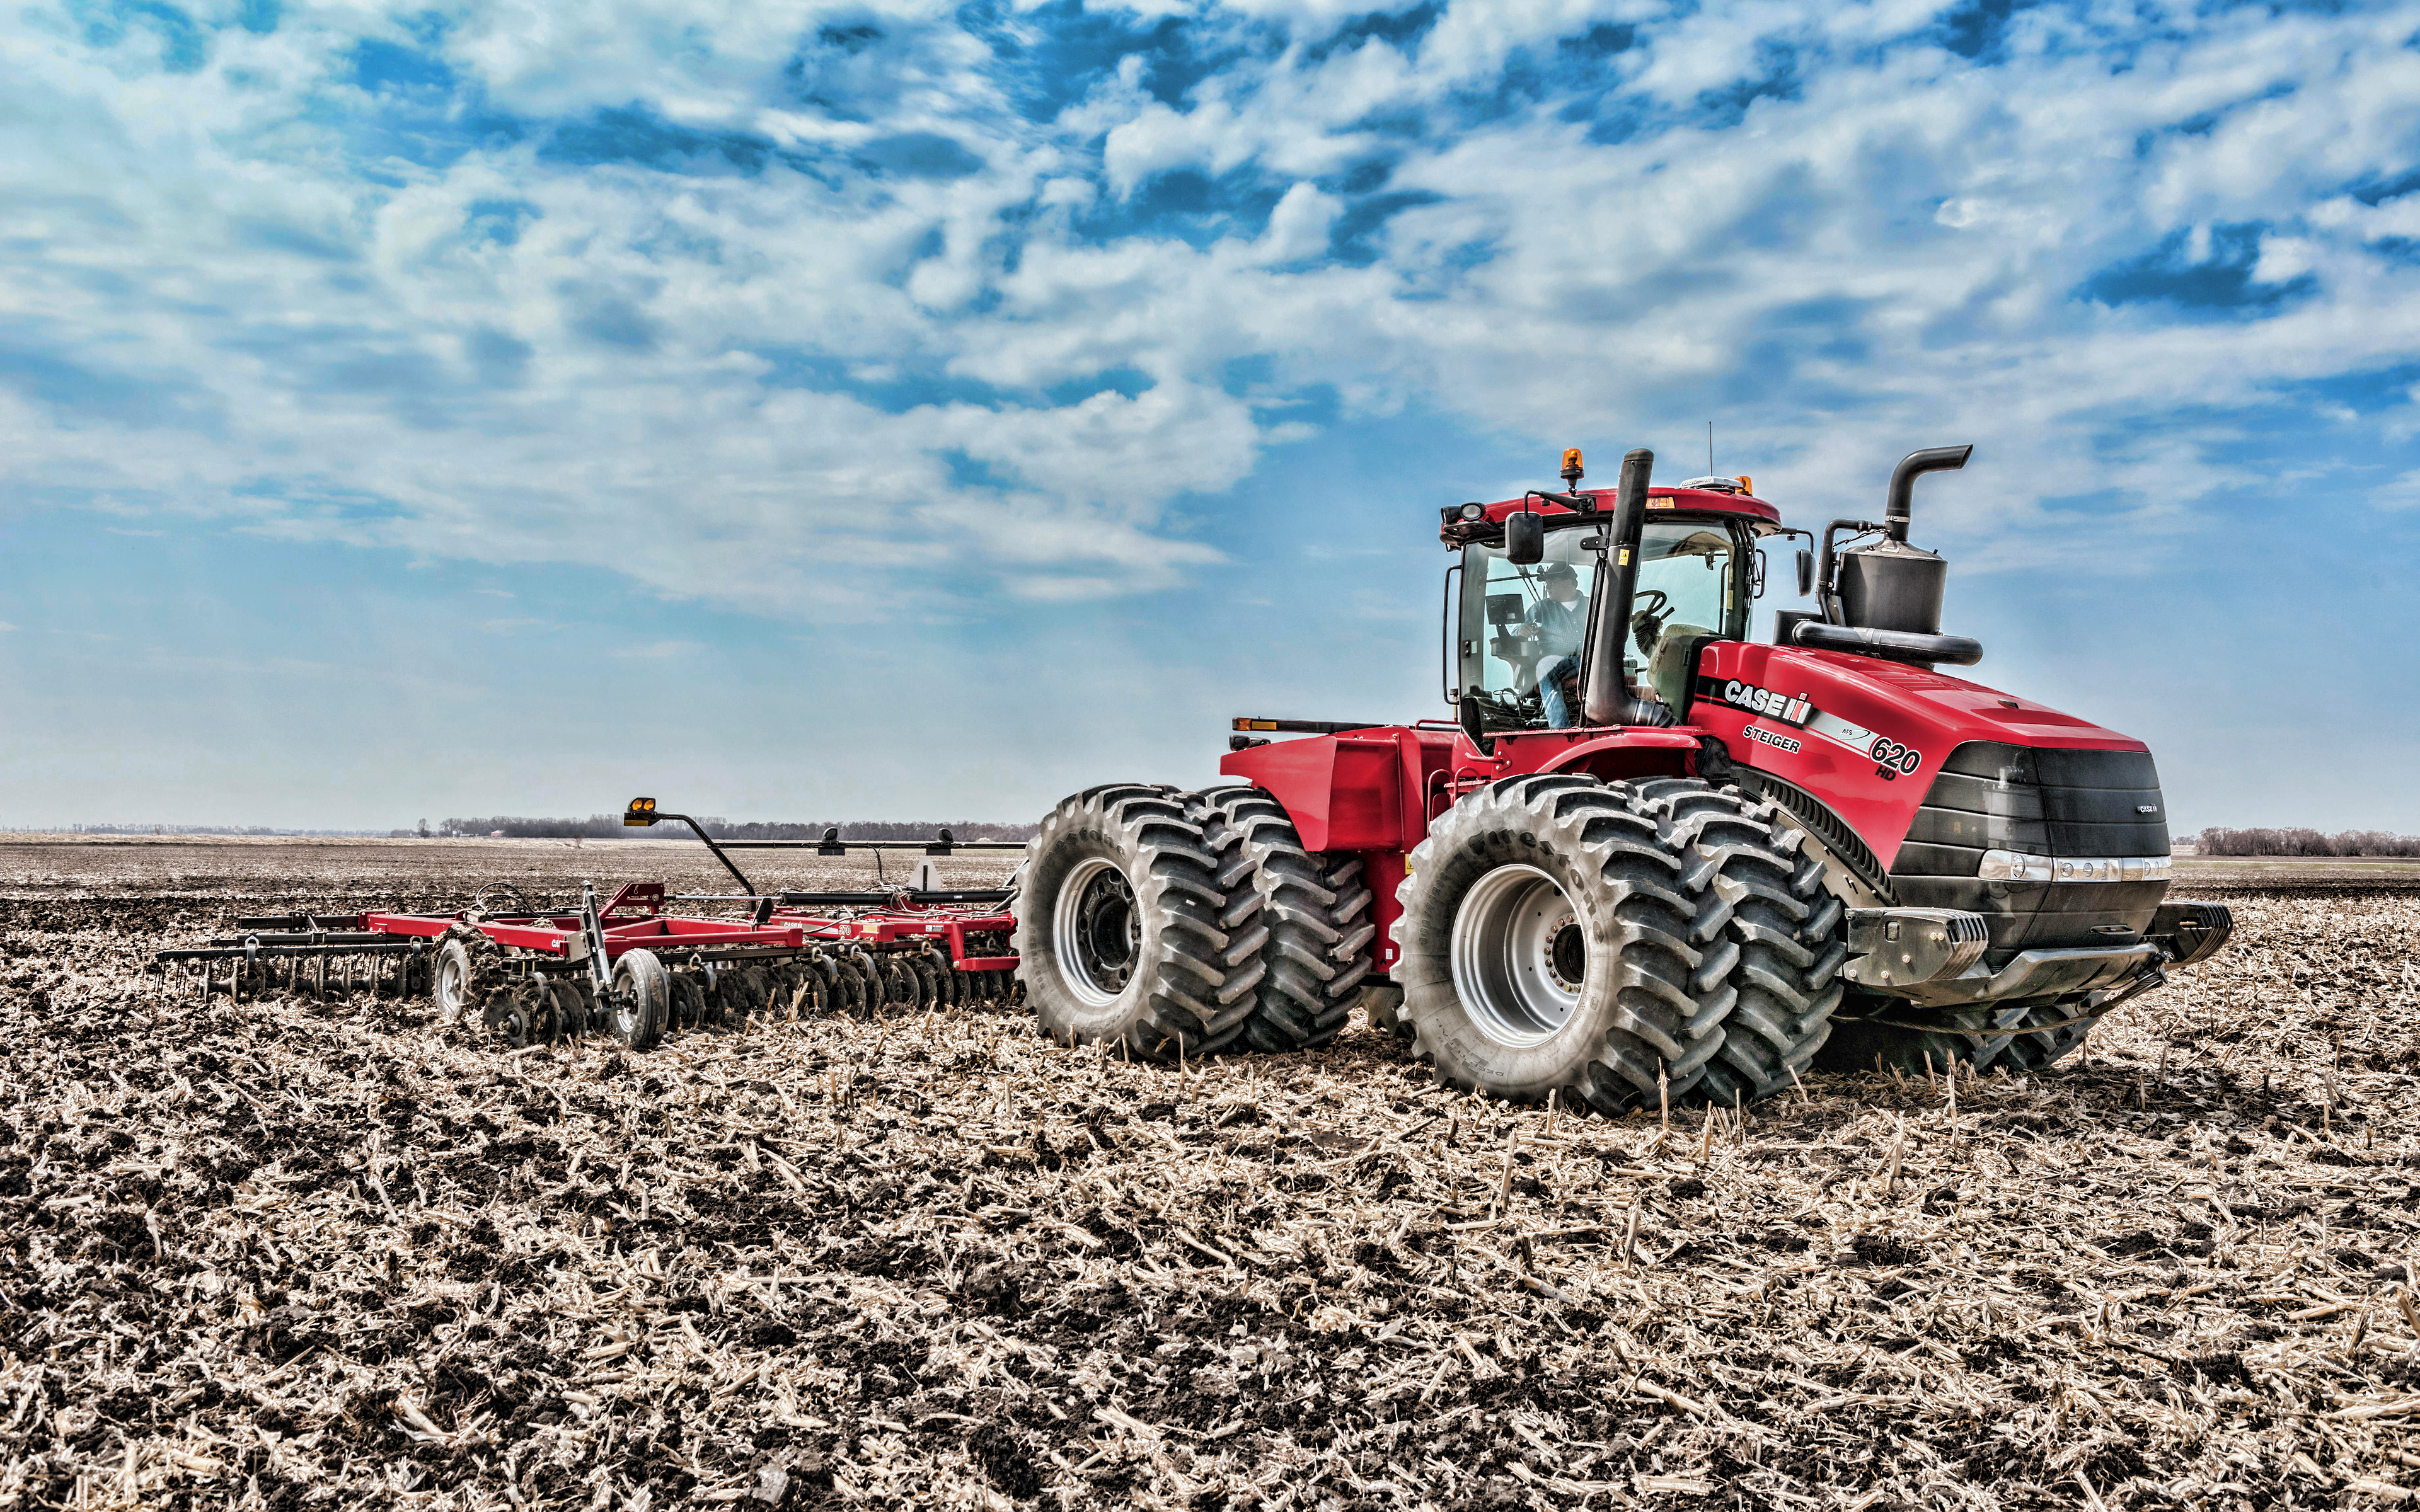 Case Ih Steiger 620 Hd, 4k, Plowing Field, 2019 Tractors